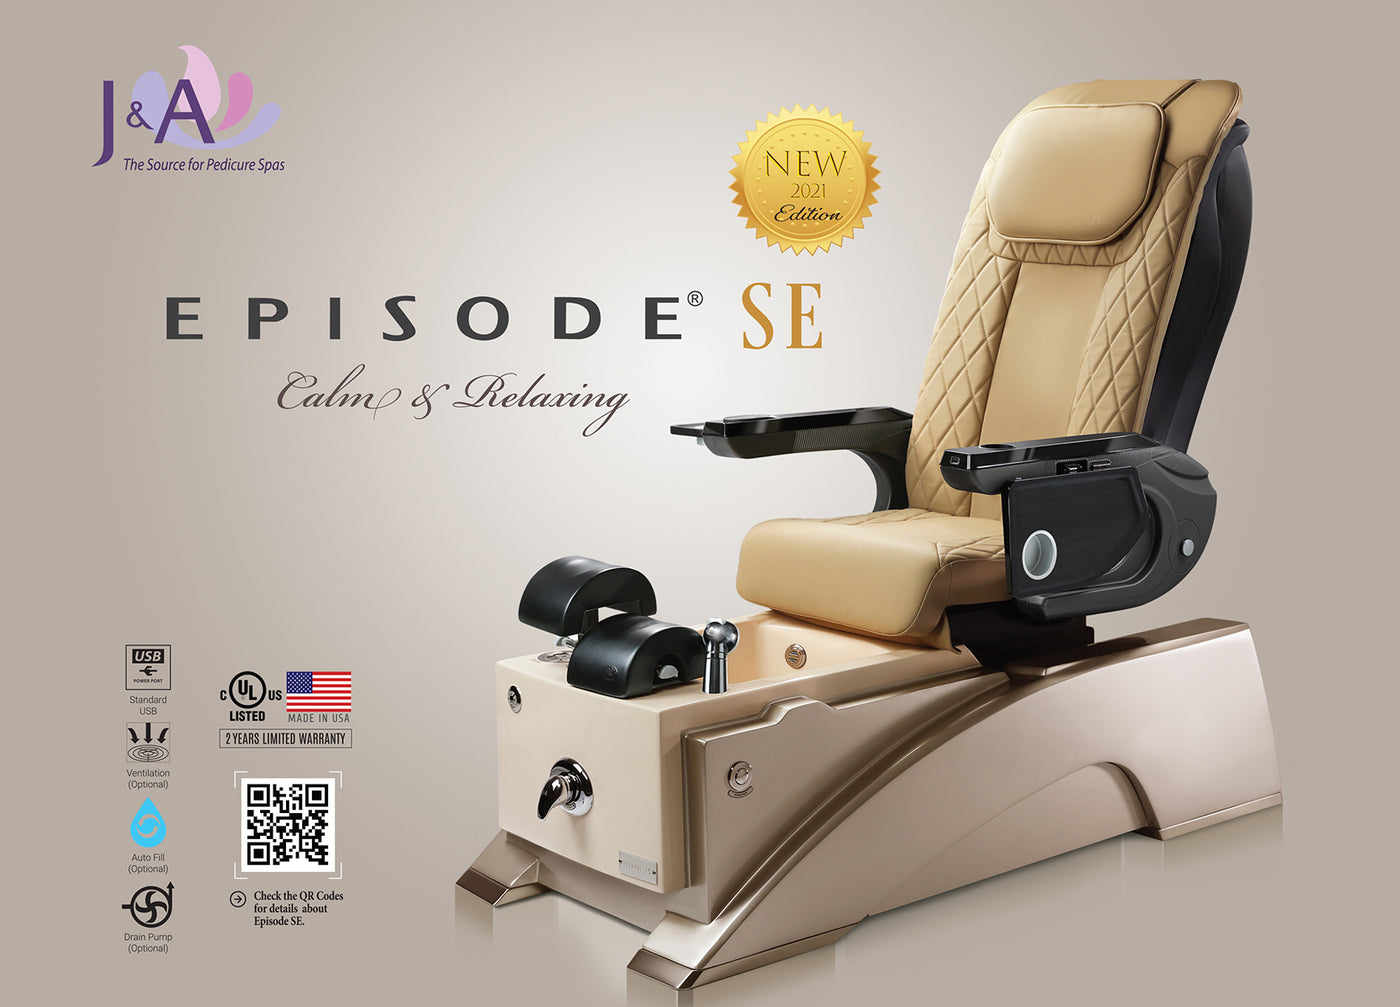 Episode SE Pedicure Chair